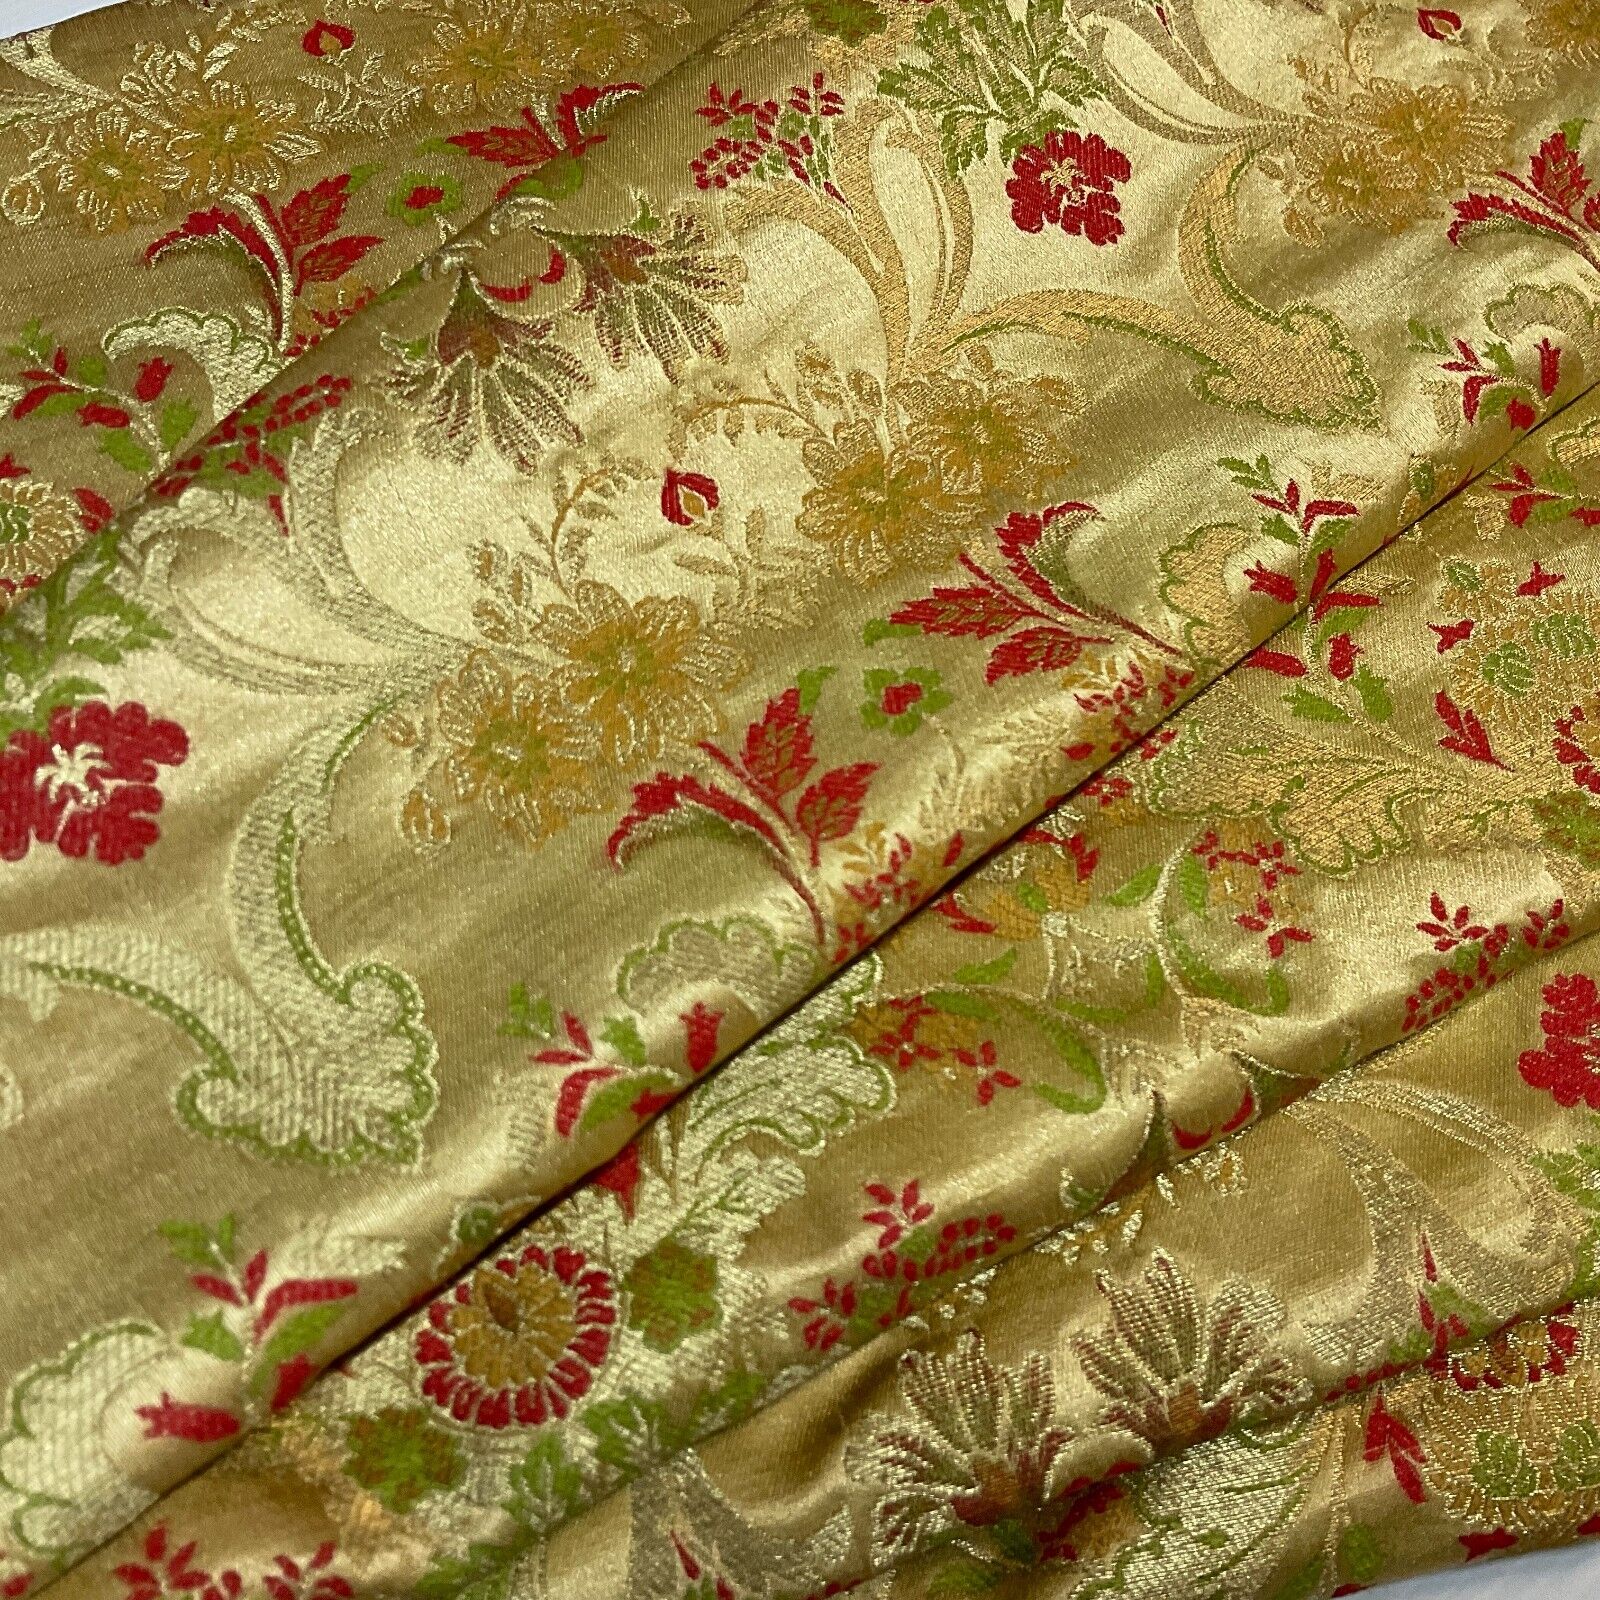 Ornamental Ornate Floral Silk Kingkhab wedding Brocade Fabric 111cm wide M1734